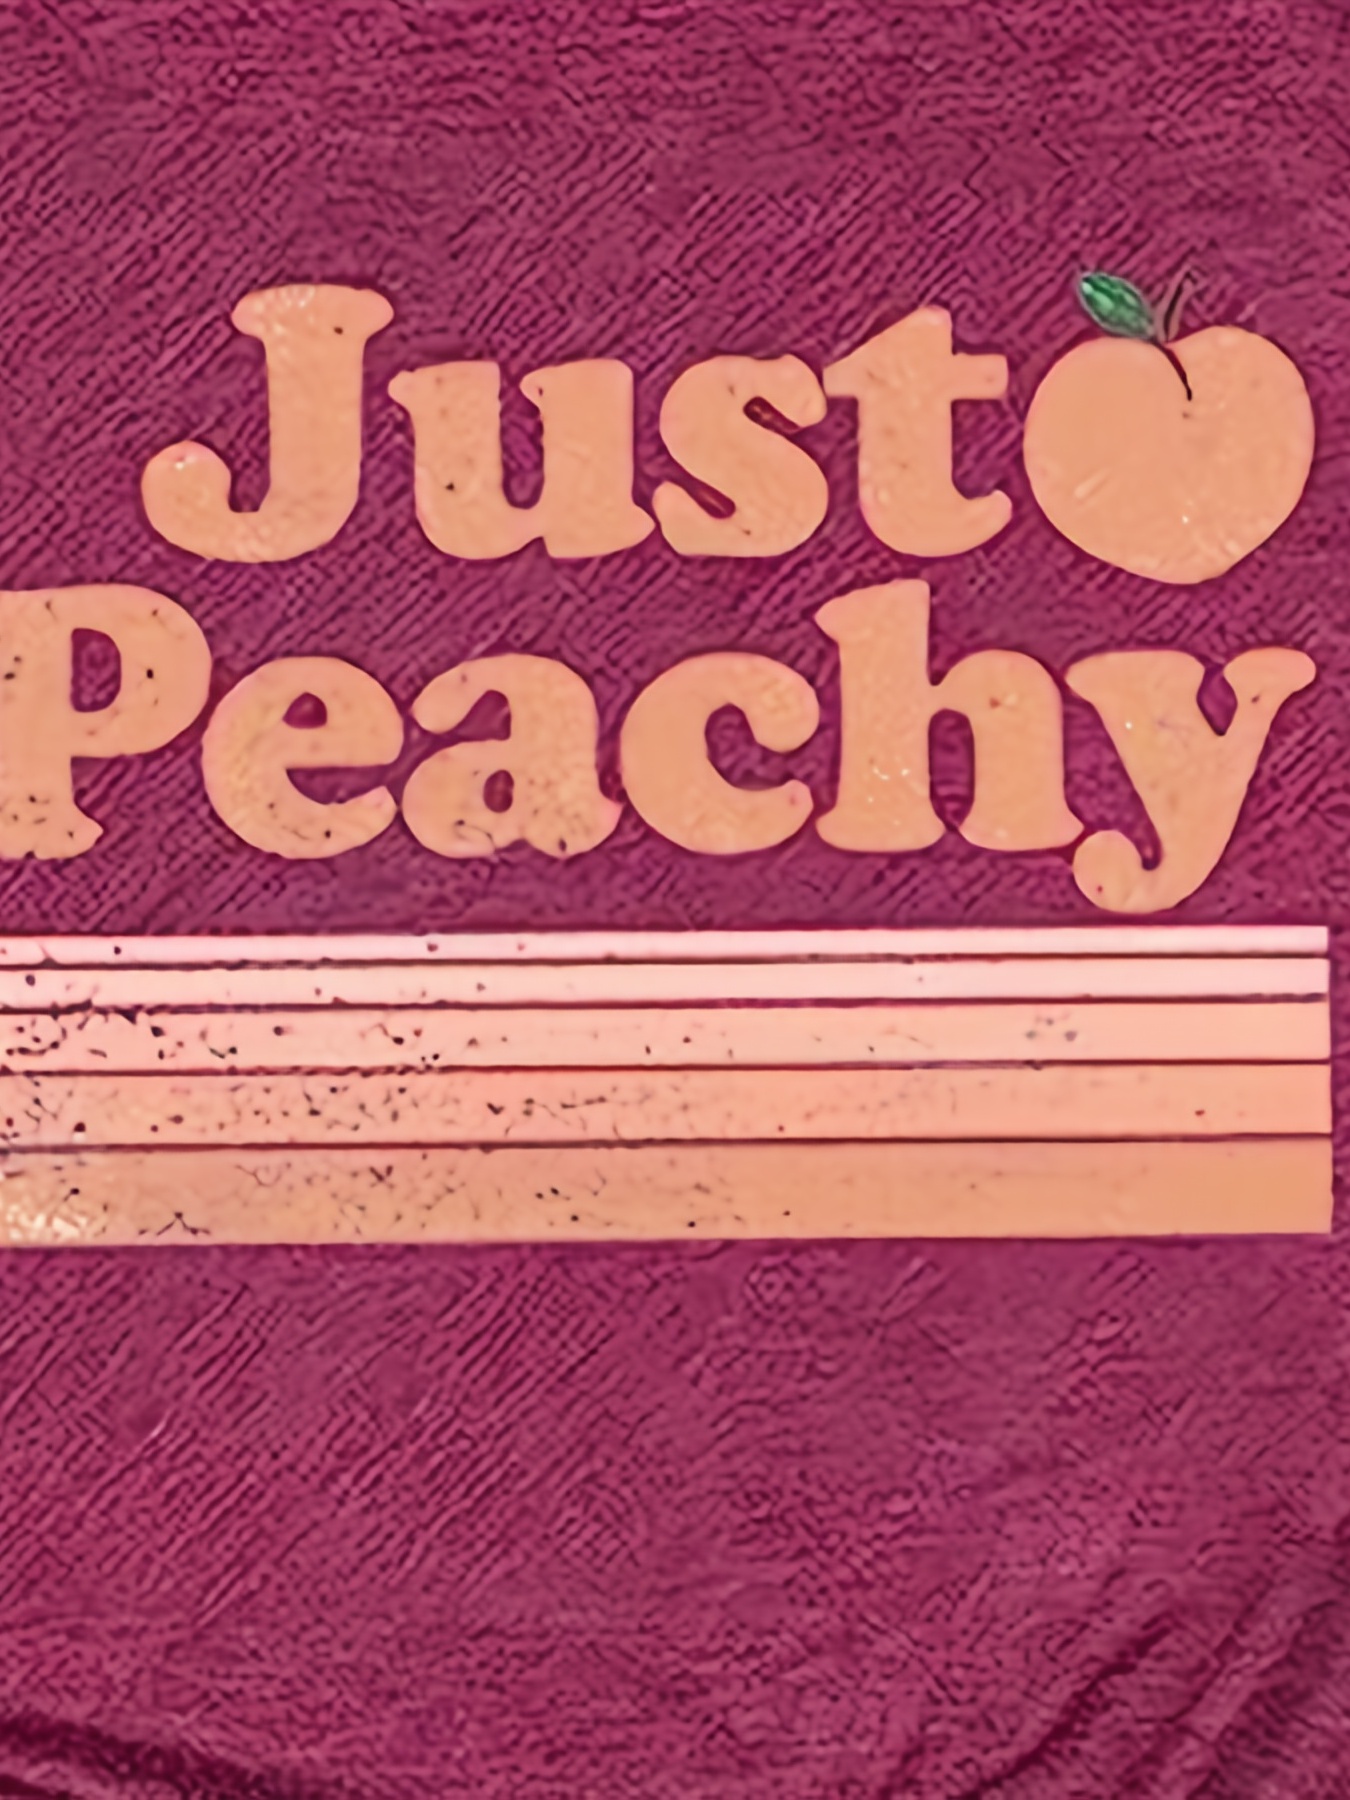 Love Peachy